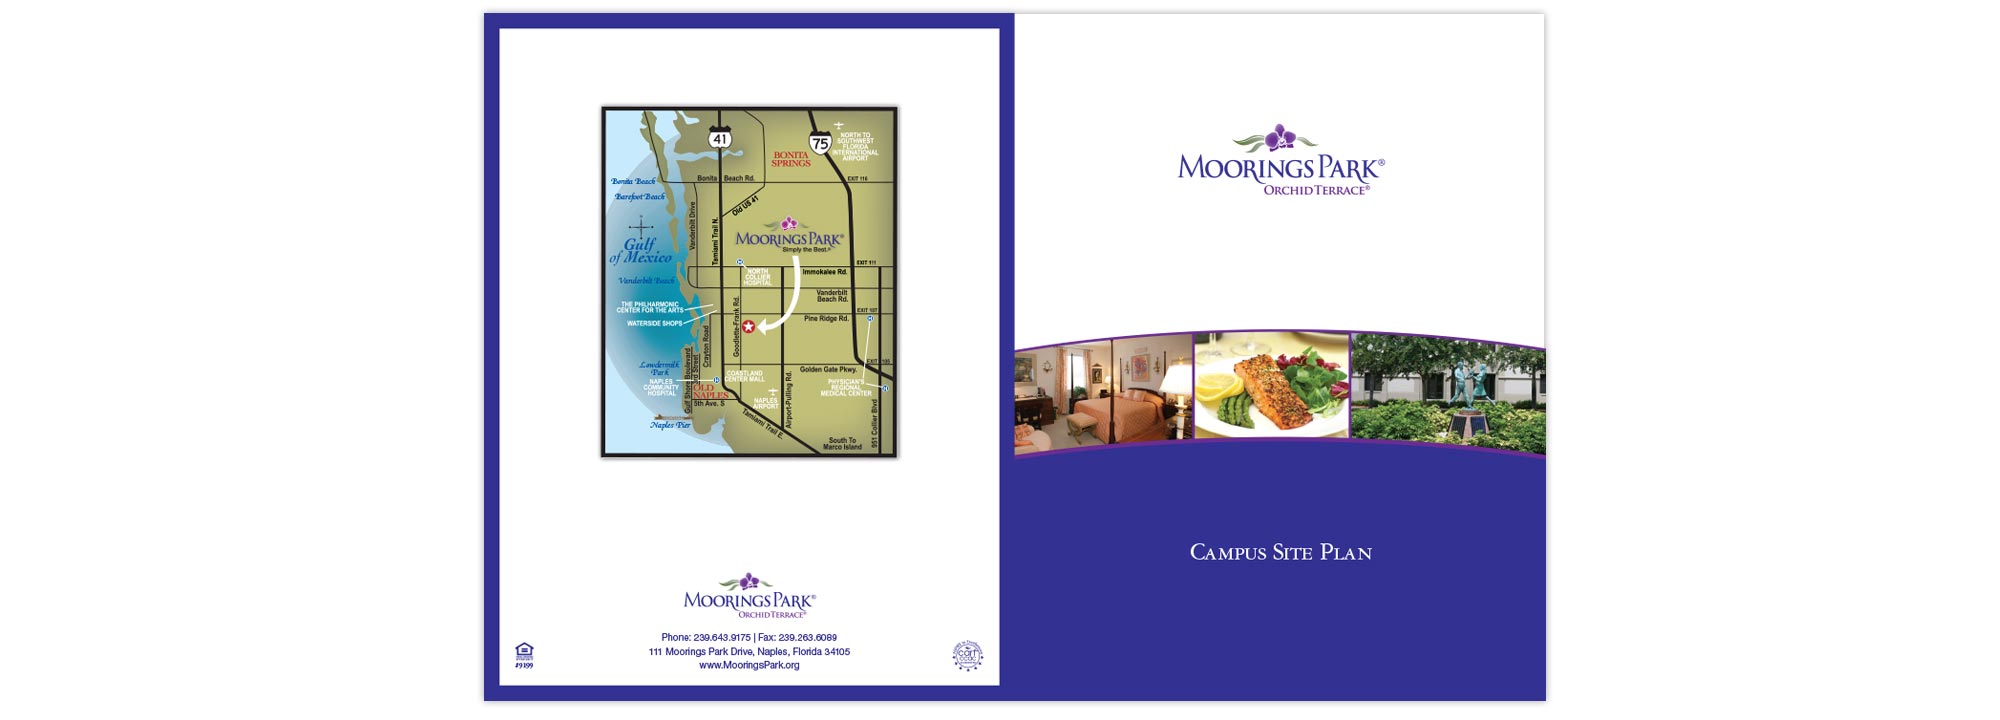 Moorings Park Orchid Terrace Brochure